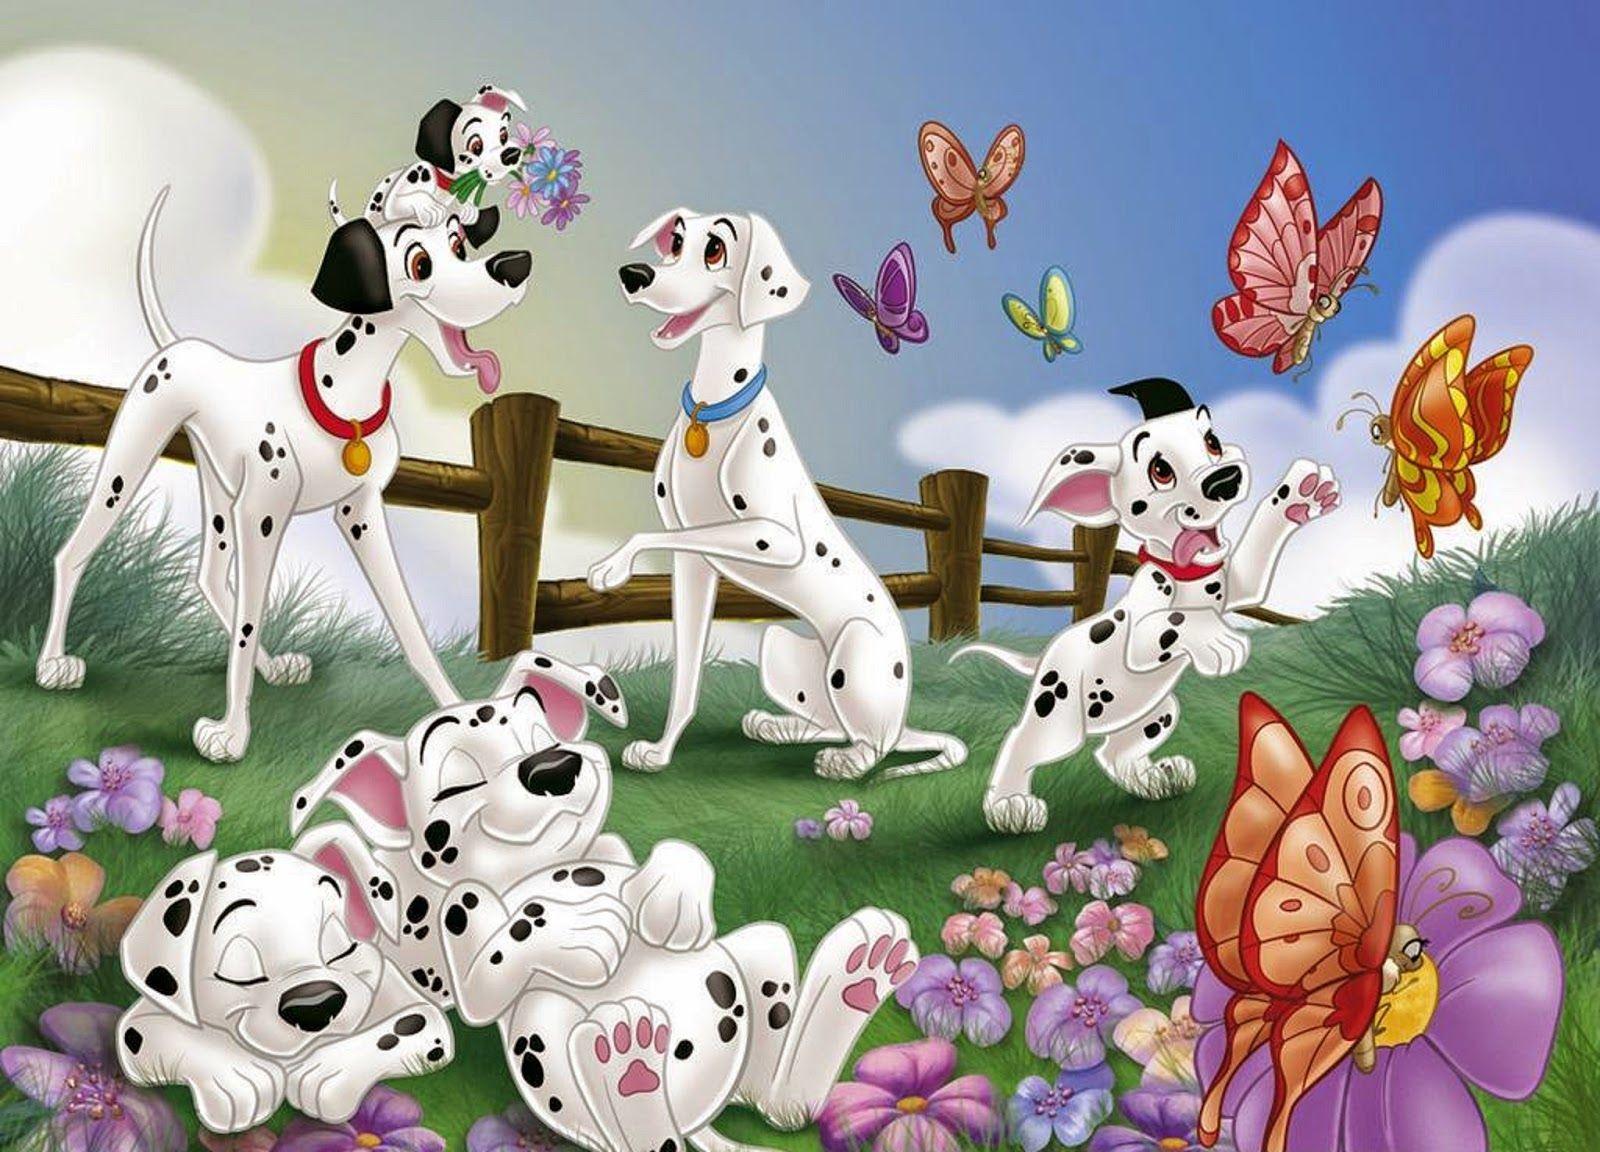 Dynamic Views: Beautiful Disney Cartoon 101 Dalmatians Wallpaper